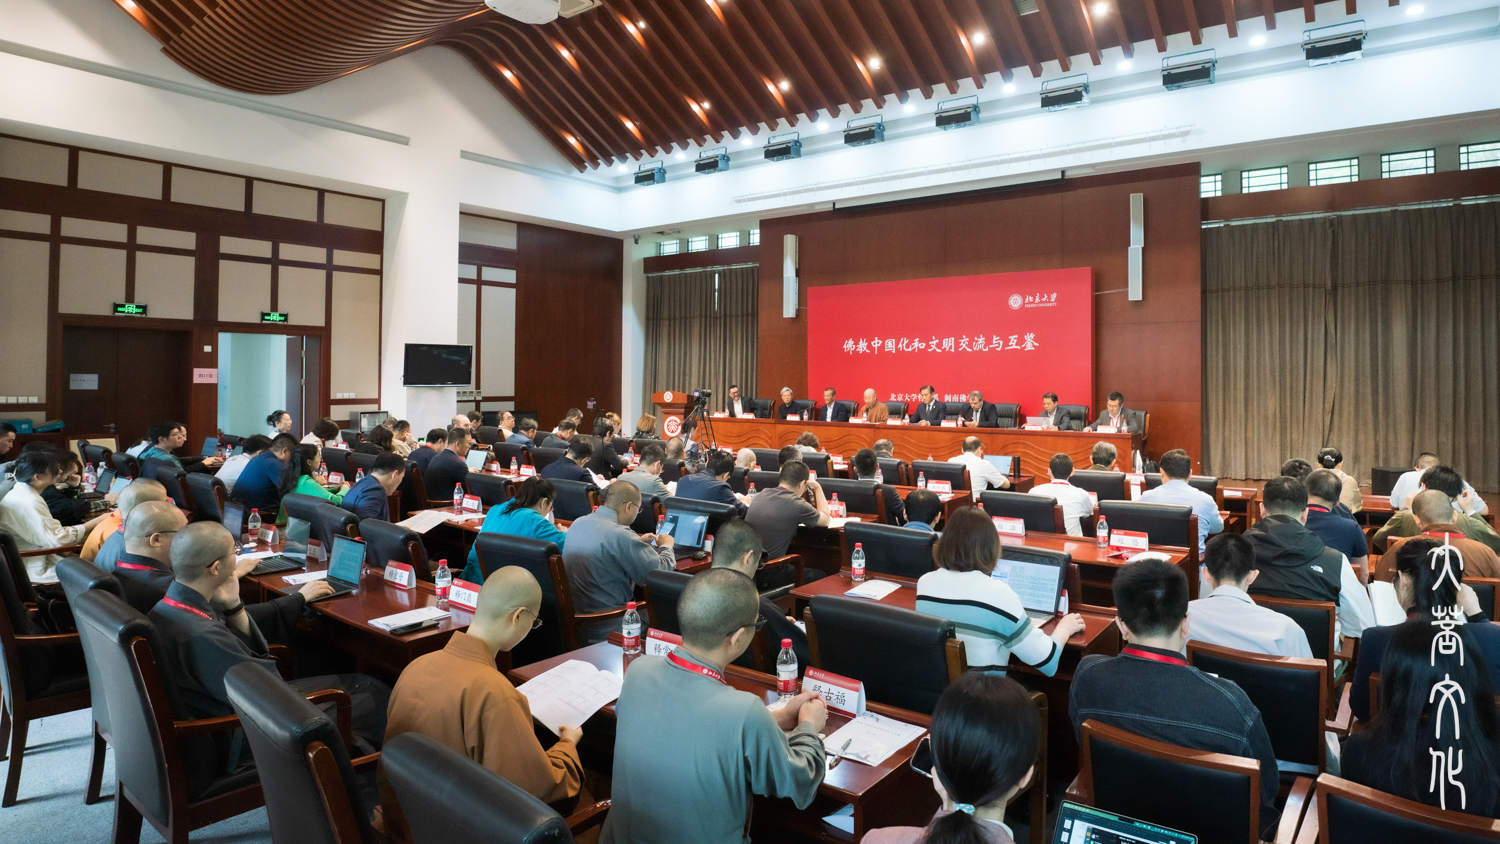 「佛教中國化和文明交流與互鑒」論壇27日上午在北京大學人文學苑正式開幕，來自海內外的近百名專家學者出席。圖/妙澄 果緣